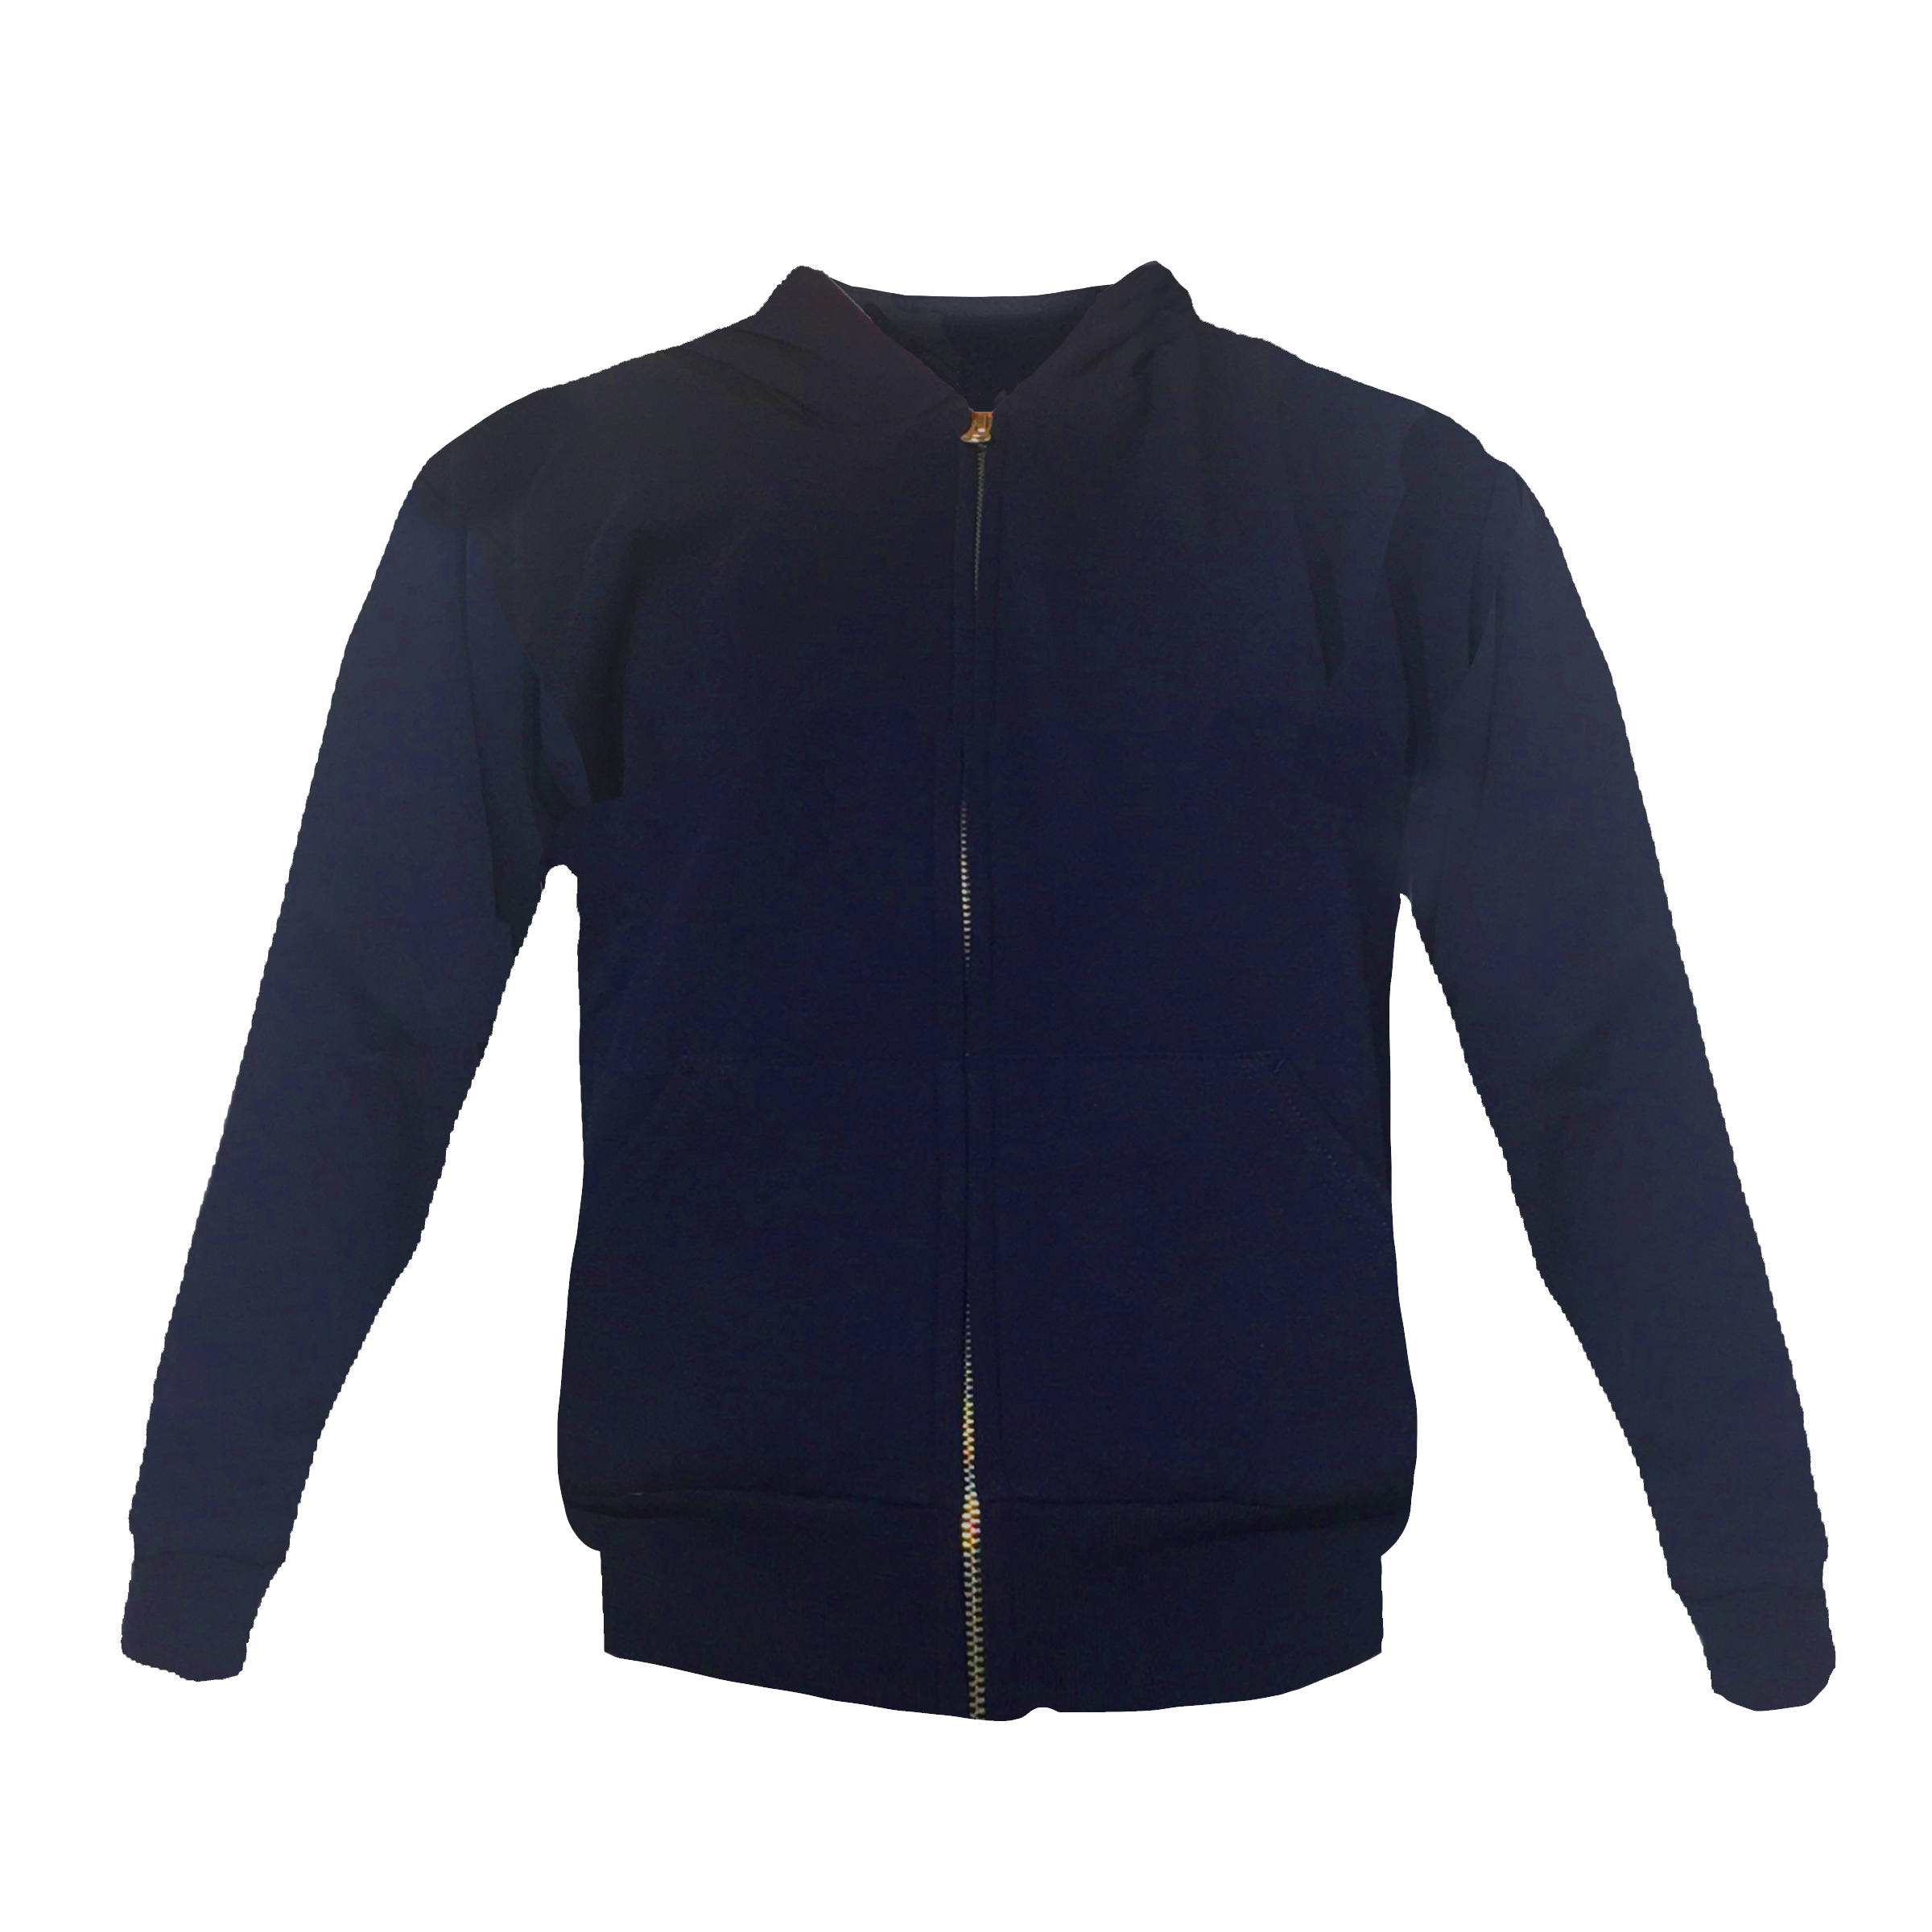 Hood Fleece Zipper Jacket - 111005